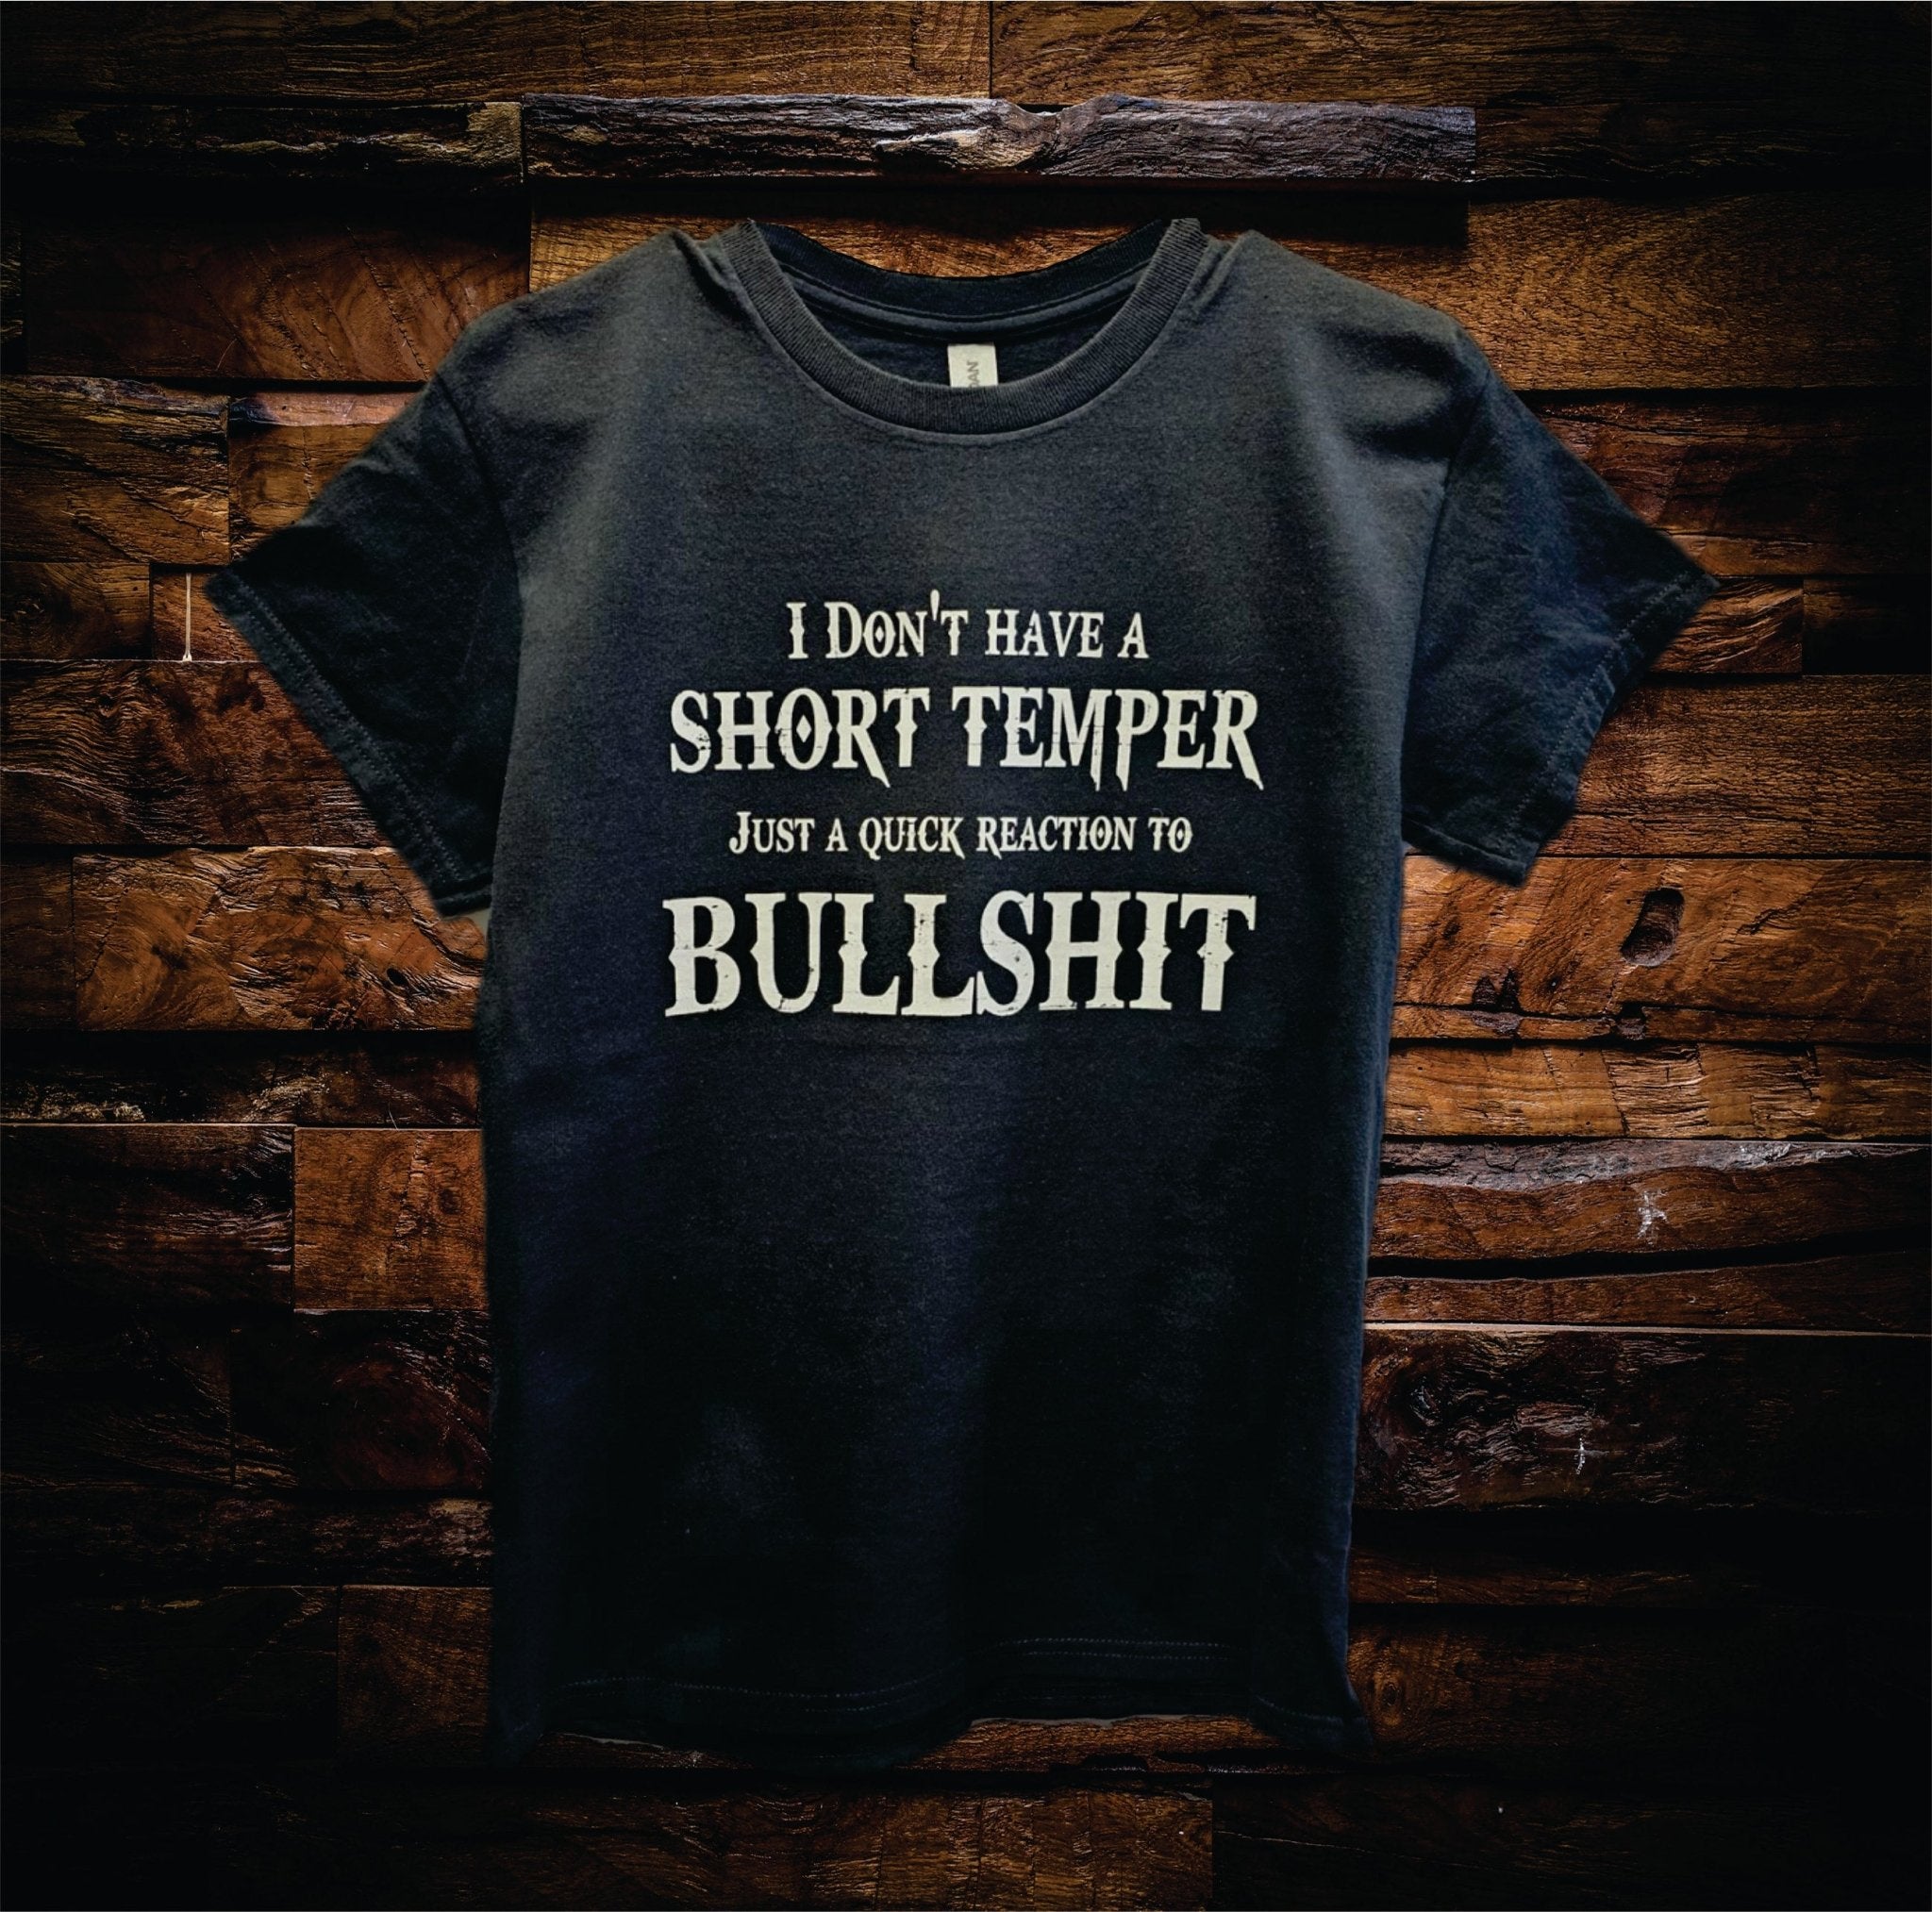 Short Temper